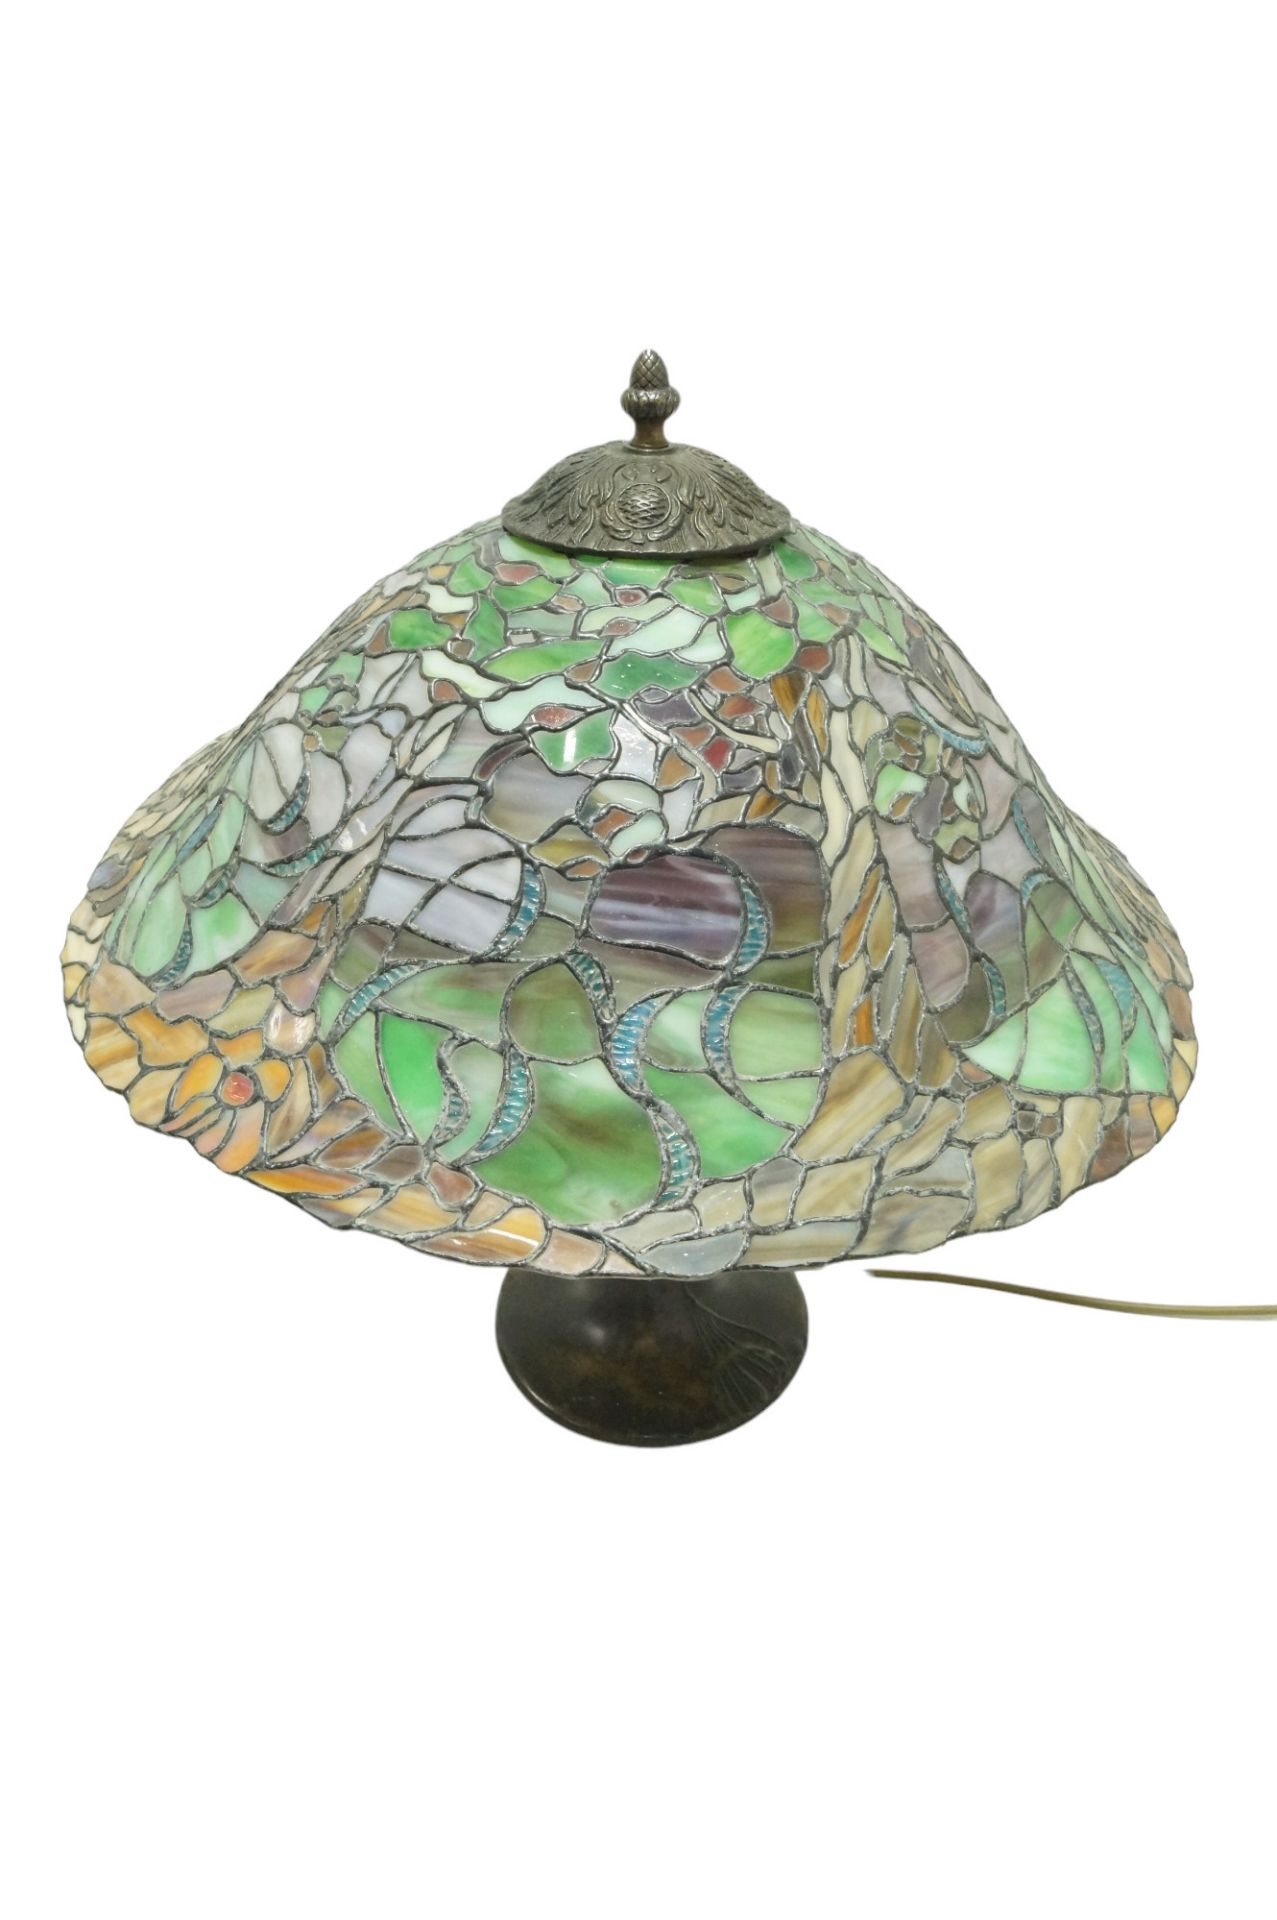 Neuzeitliche Tischlampe im Tiffany-Stil; schwerer Bronzefuß; einflammige Beleuchtung unter aufwendi - Image 2 of 5